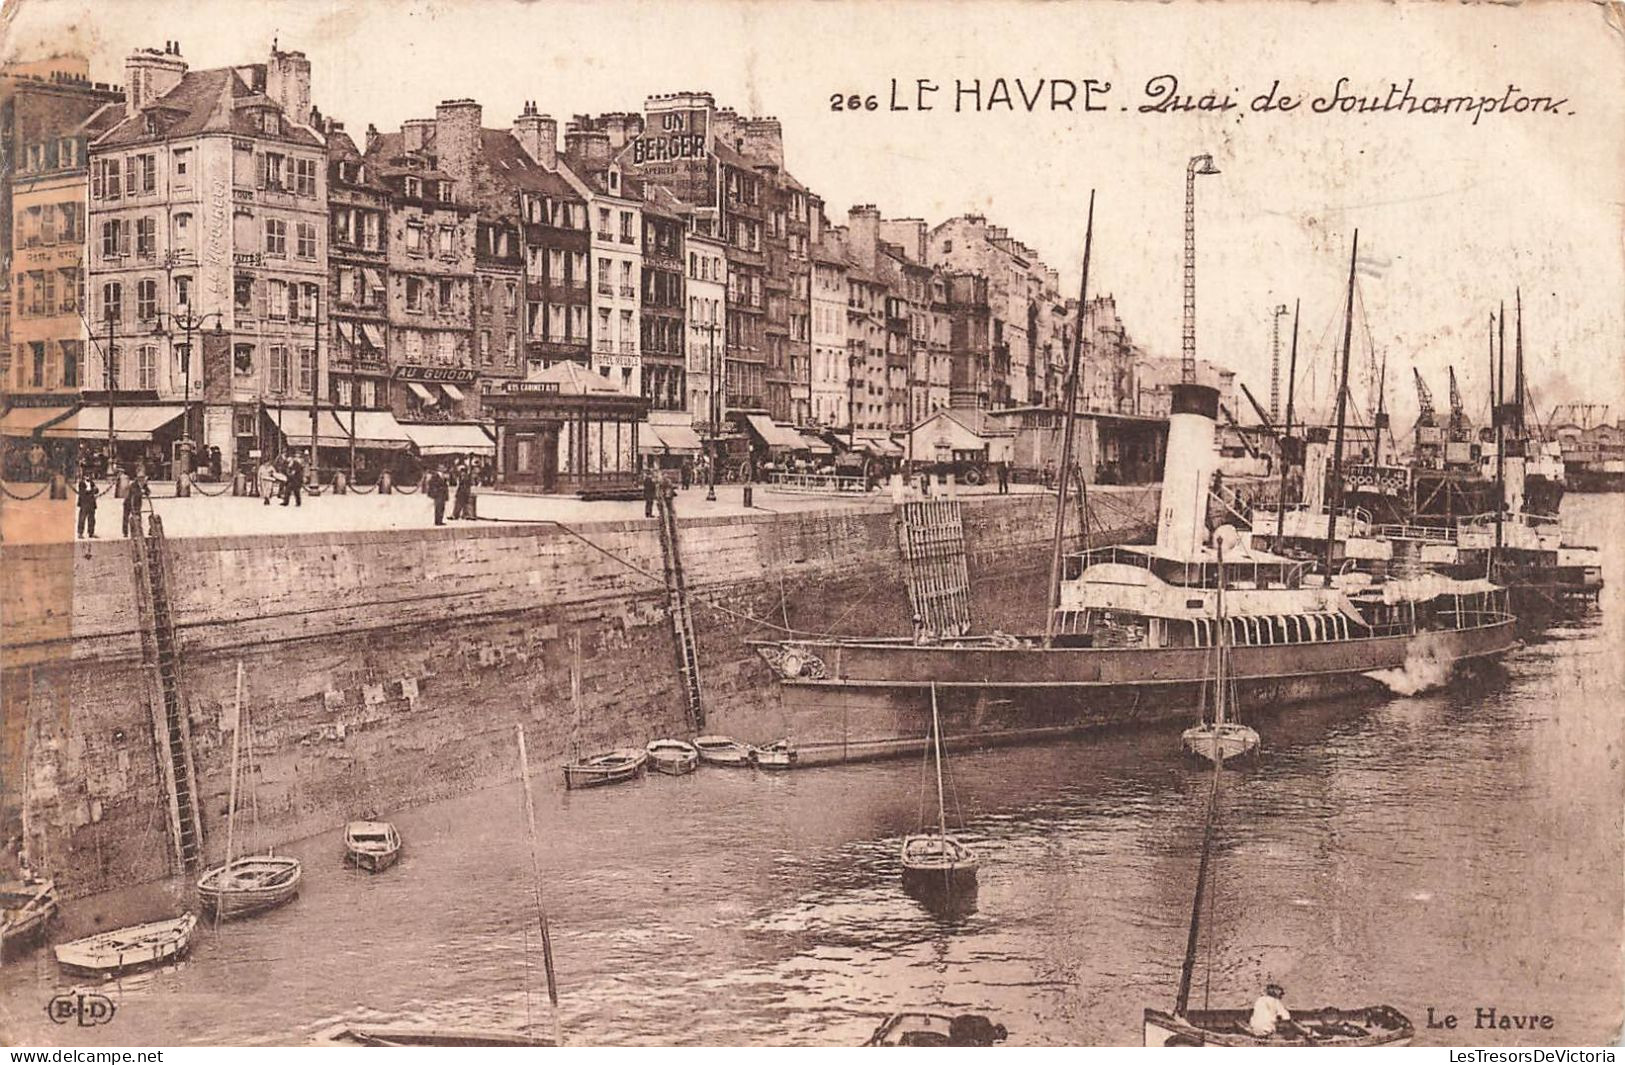 FRANCE - Le Havre - Quai De Southampton - Carte Postale Ancienne - Port